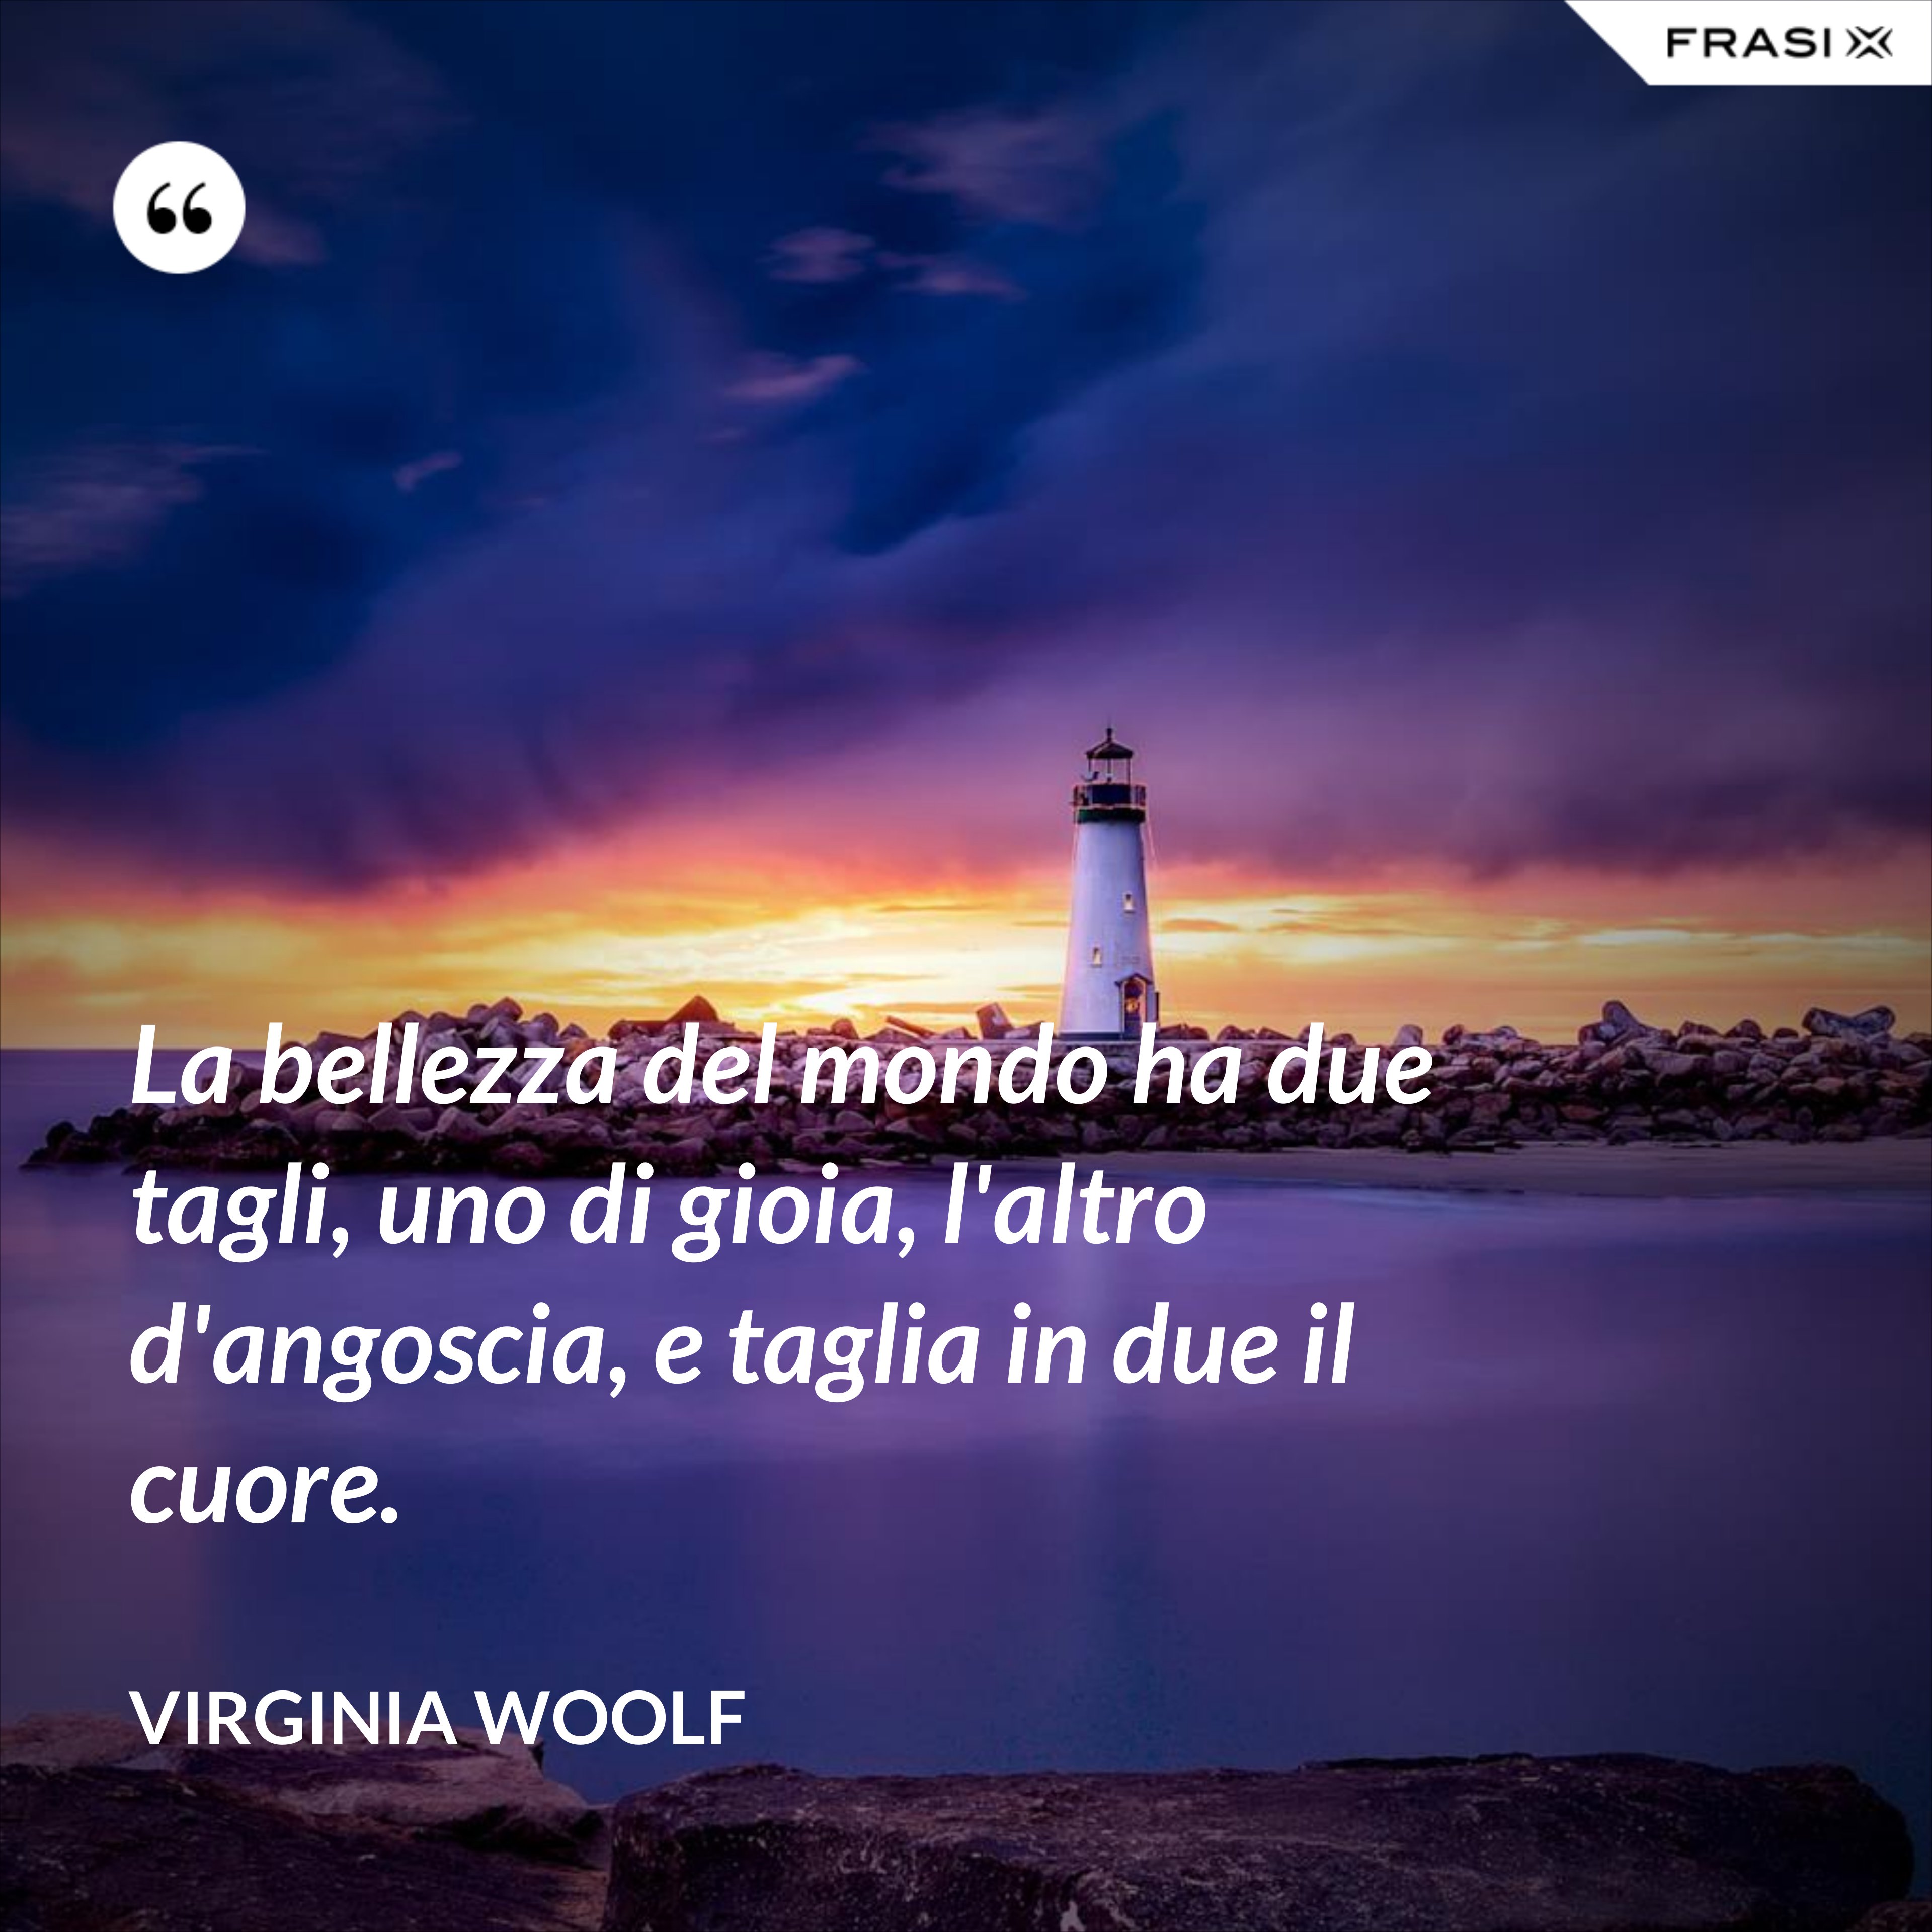 La bellezza del mondo ha due tagli, uno di gioia, l'altro d'angoscia, e taglia in due il cuore. - Virginia Woolf